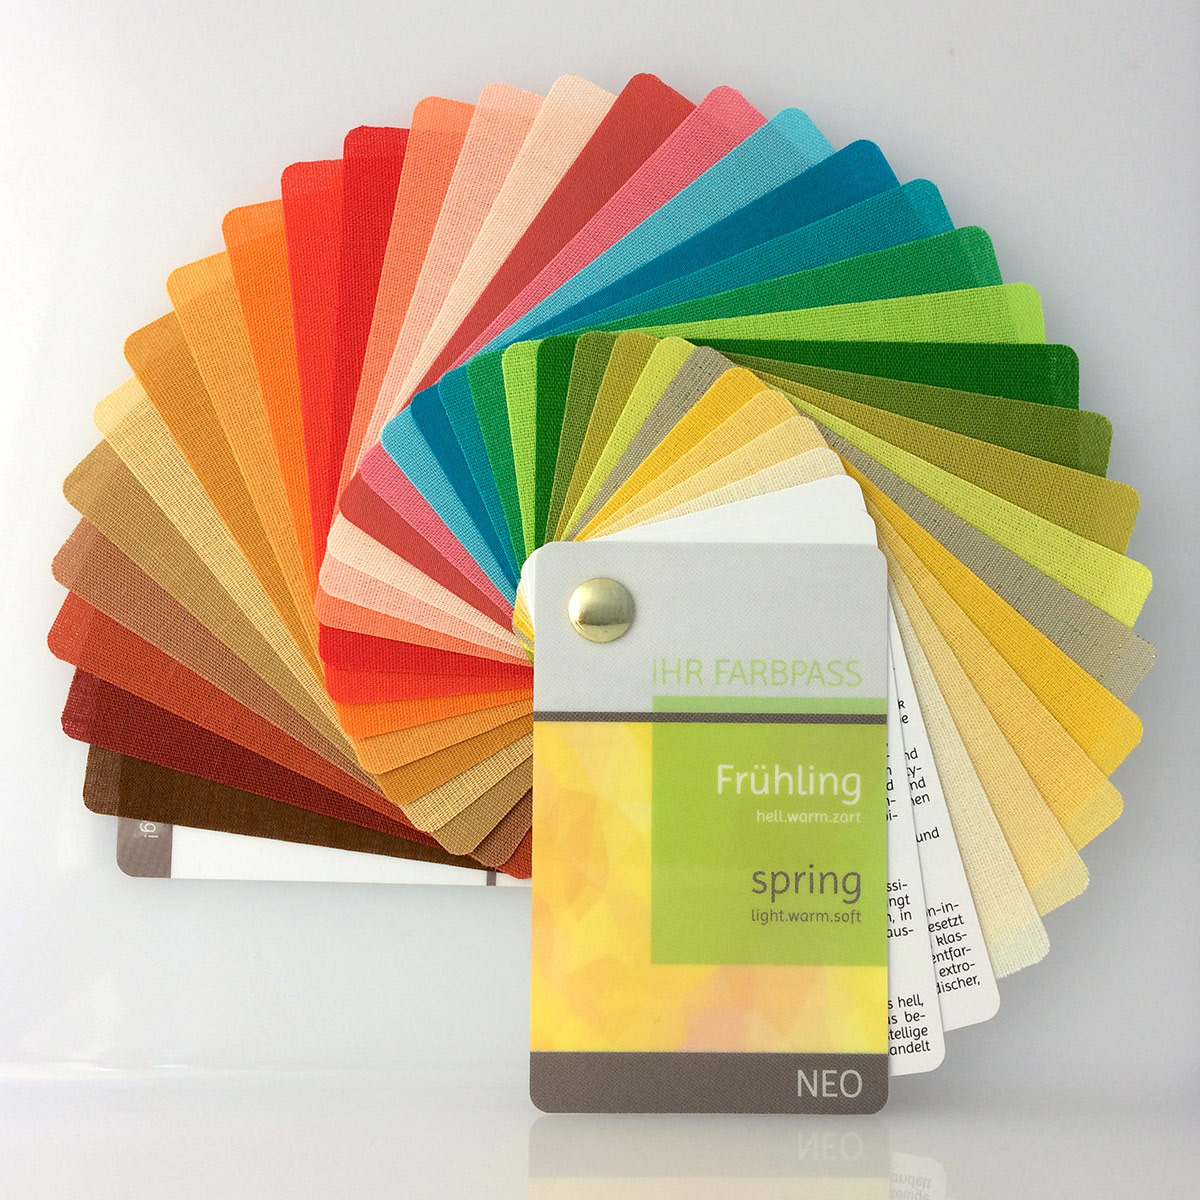 Farbpass Frühlingstyp zur Farbberatung, Vorderseite - Neo | Komood